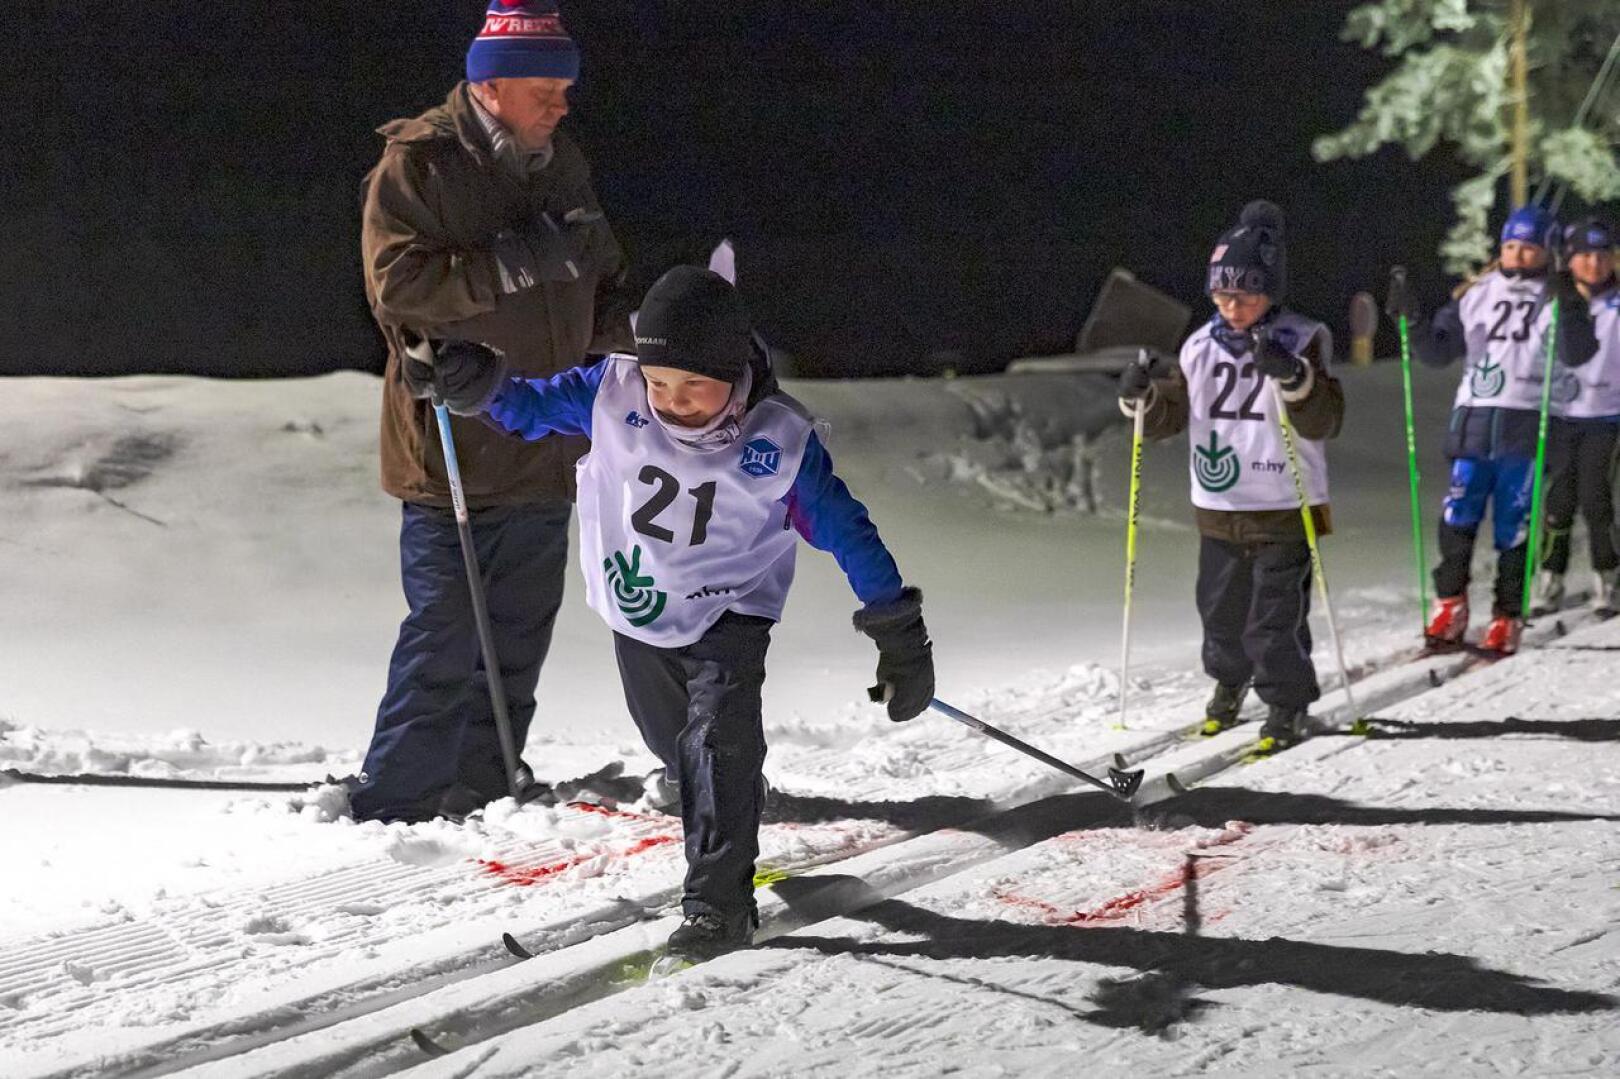 Talven ensimmäiset Sarjahiihdot kisattiin Aakonmajalla keskiviikkoiltana. HaU:n hiihtojaoston järjestämiä kilpailuja jatketaan joka toinen keskiviikko. Kuvassa matkaan lähdössä 8-vuotiaiden sarjassa kilpaileva Asla Anttila.